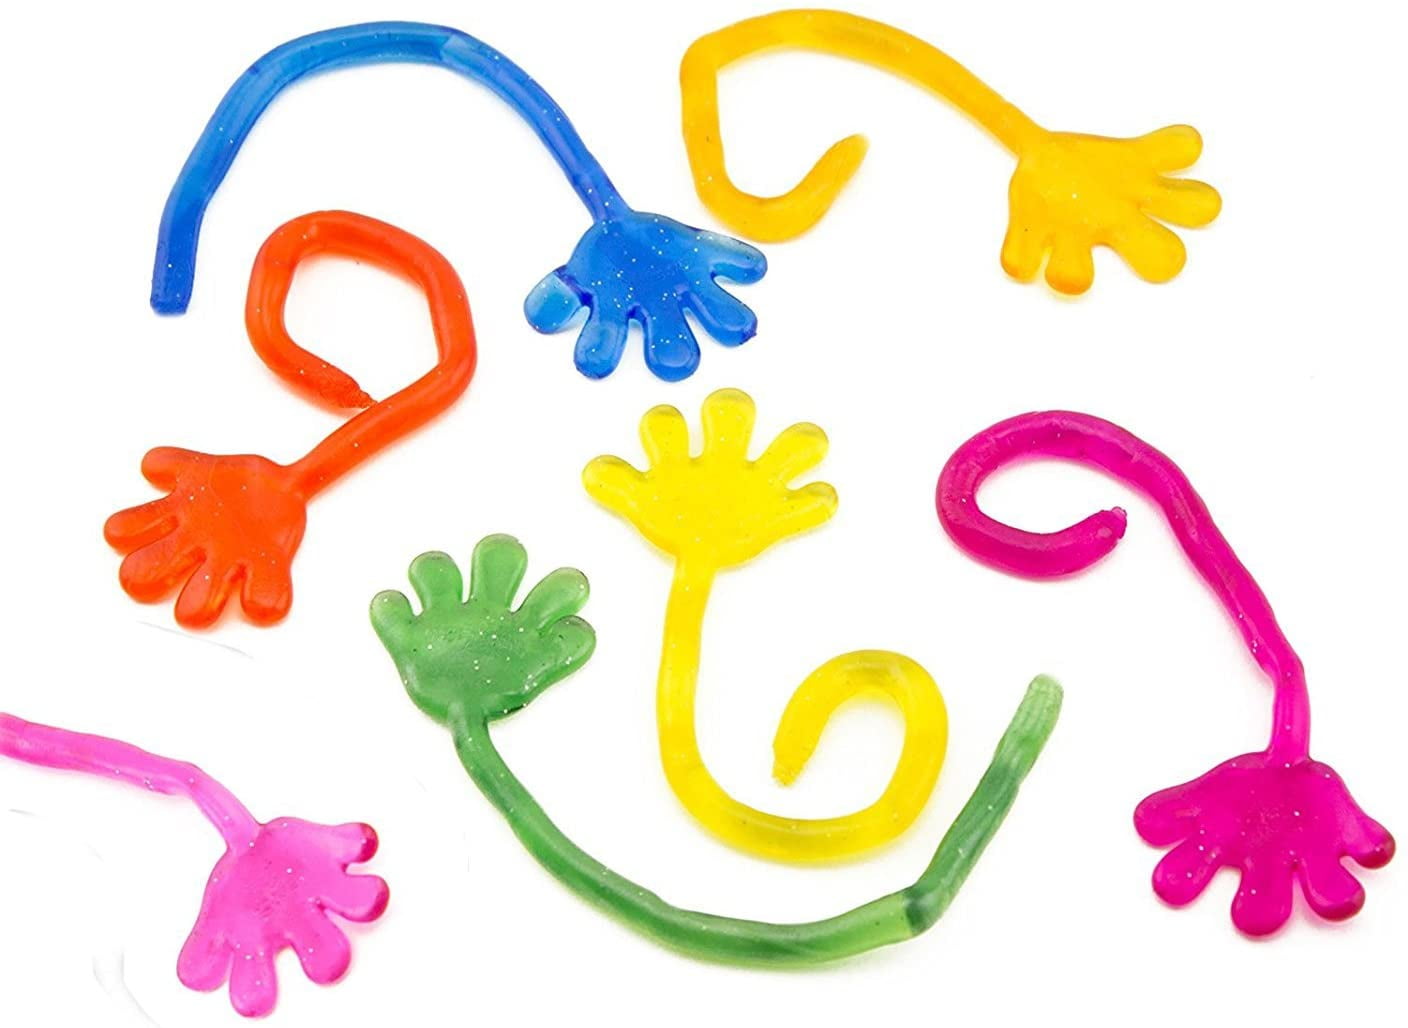  FLMRIOY 50 Pcs Glitter Sticky Hands Toys for Kids